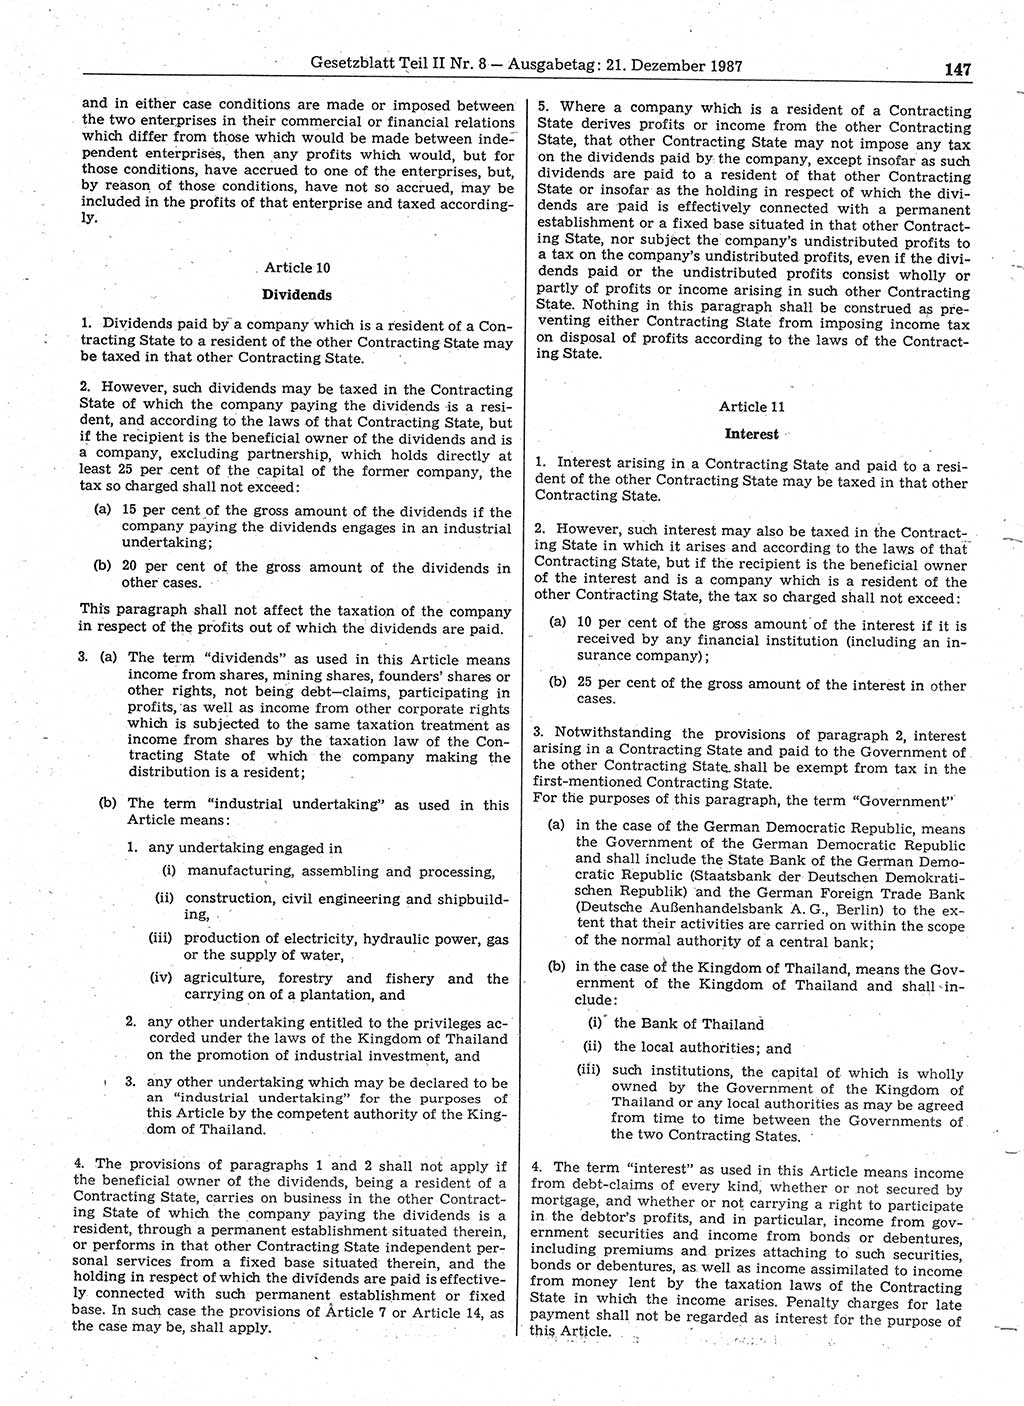 Gesetzblatt (GBl.) der Deutschen Demokratischen Republik (DDR) Teil ⅠⅠ 1987, Seite 147 (GBl. DDR ⅠⅠ 1987, S. 147)